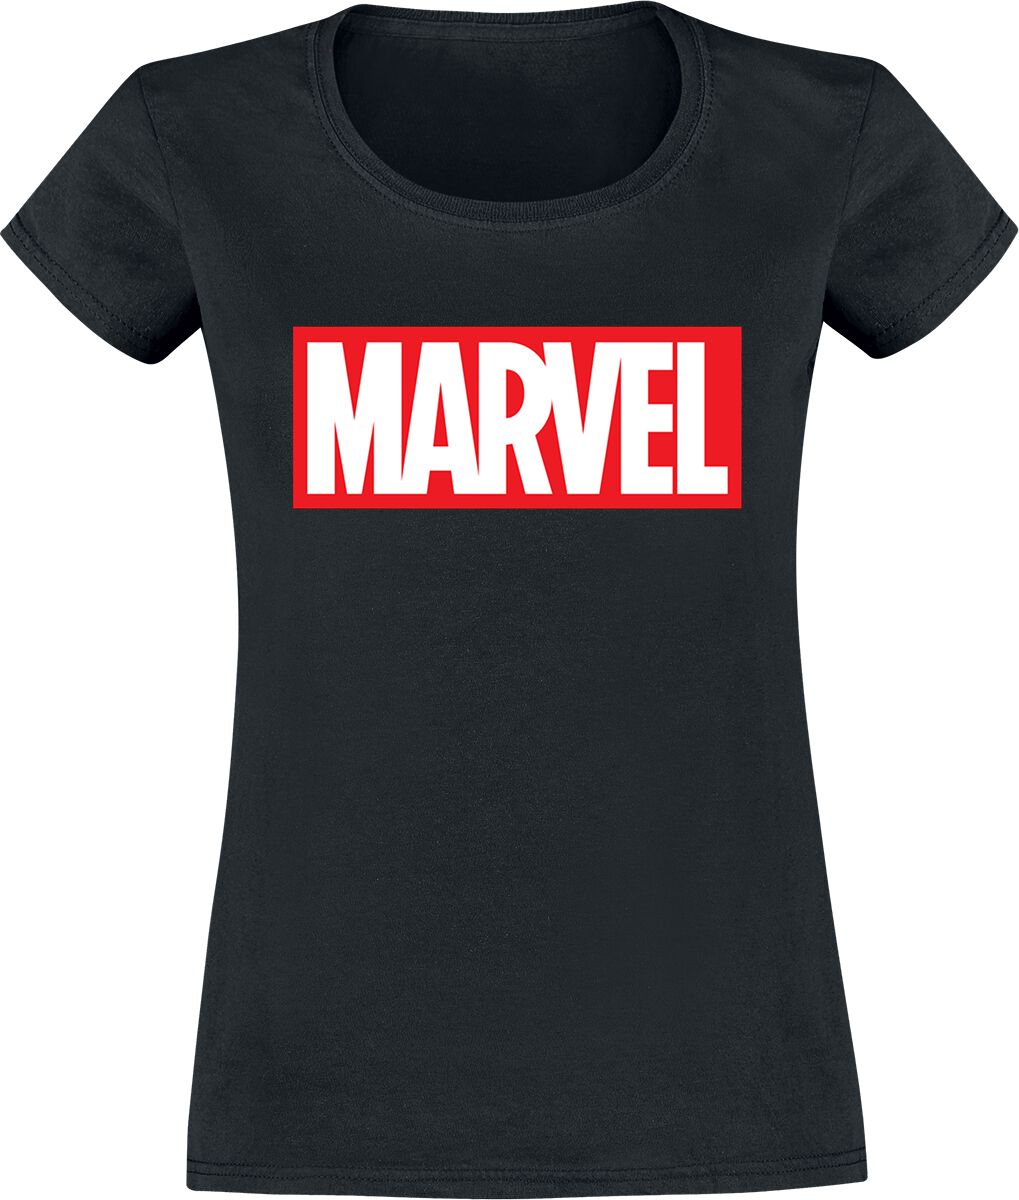 Marvel - Marvel T-Shirt - Logo - XS bis XXL - für Damen - Größe XXL - schwarz  - EMP exklusives Merchandise! von Marvel